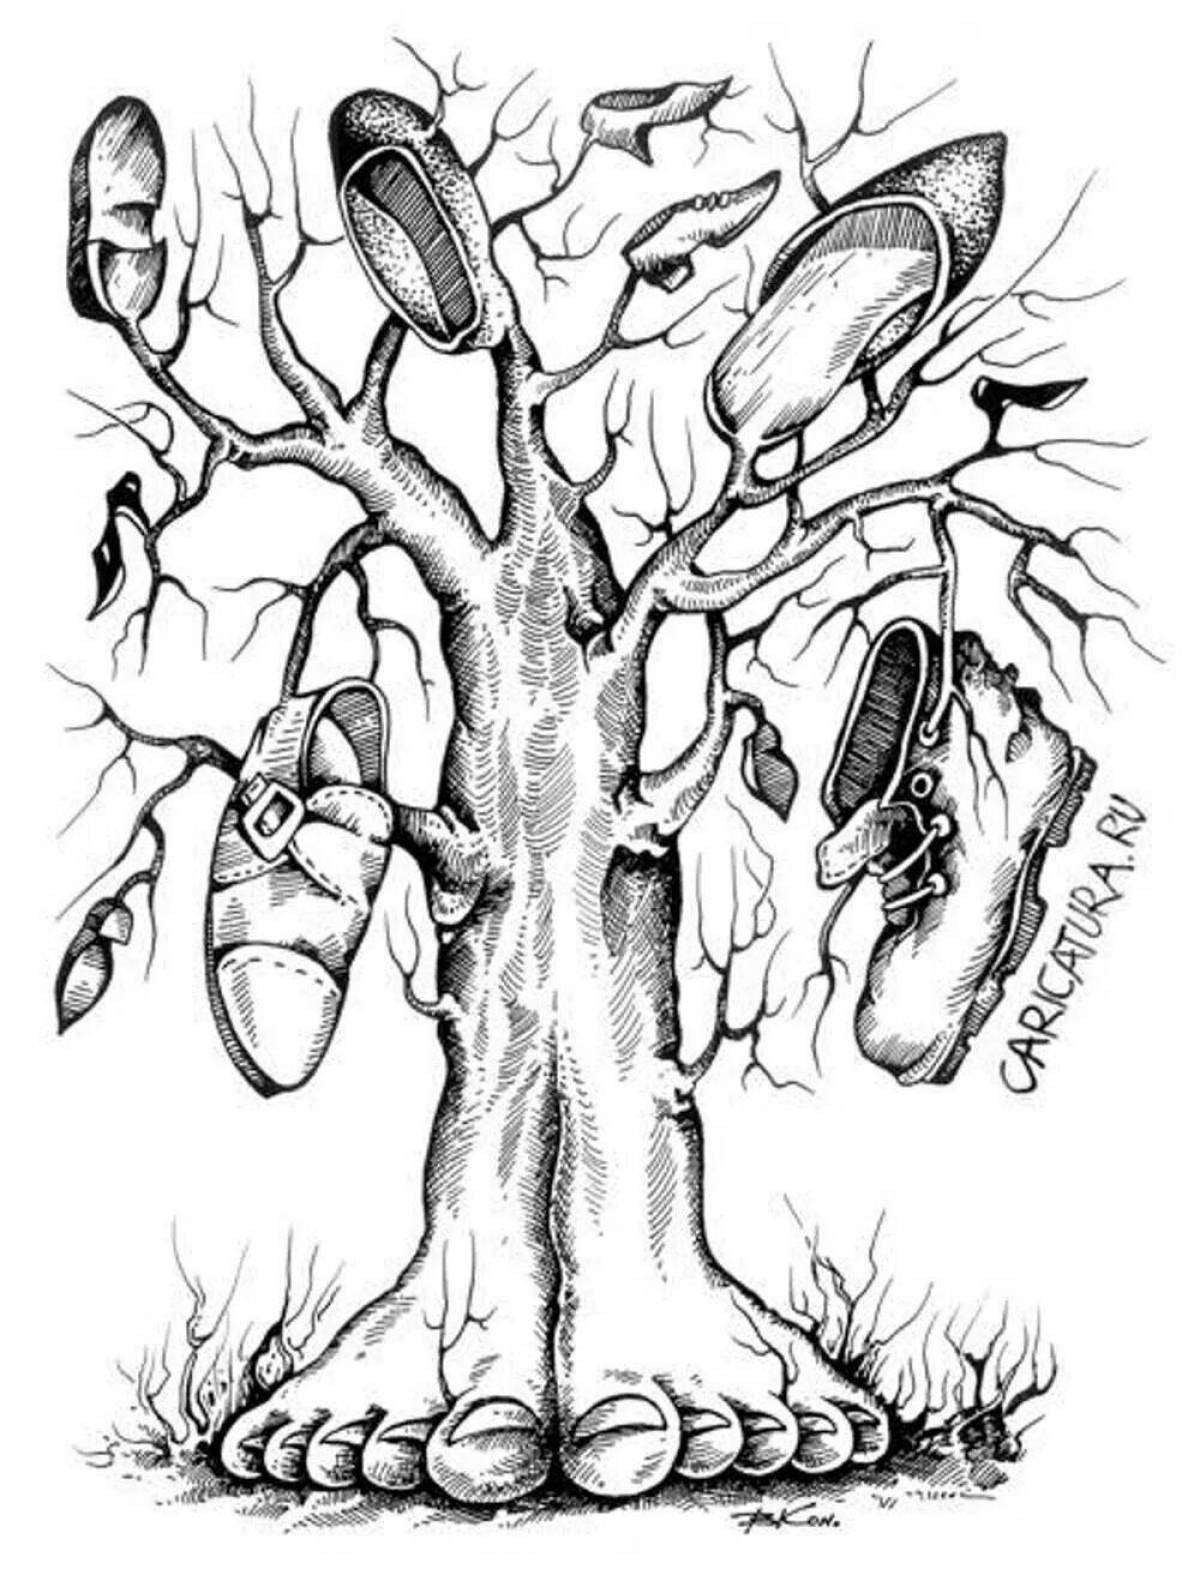 корней чуковский чудо дерево картинки